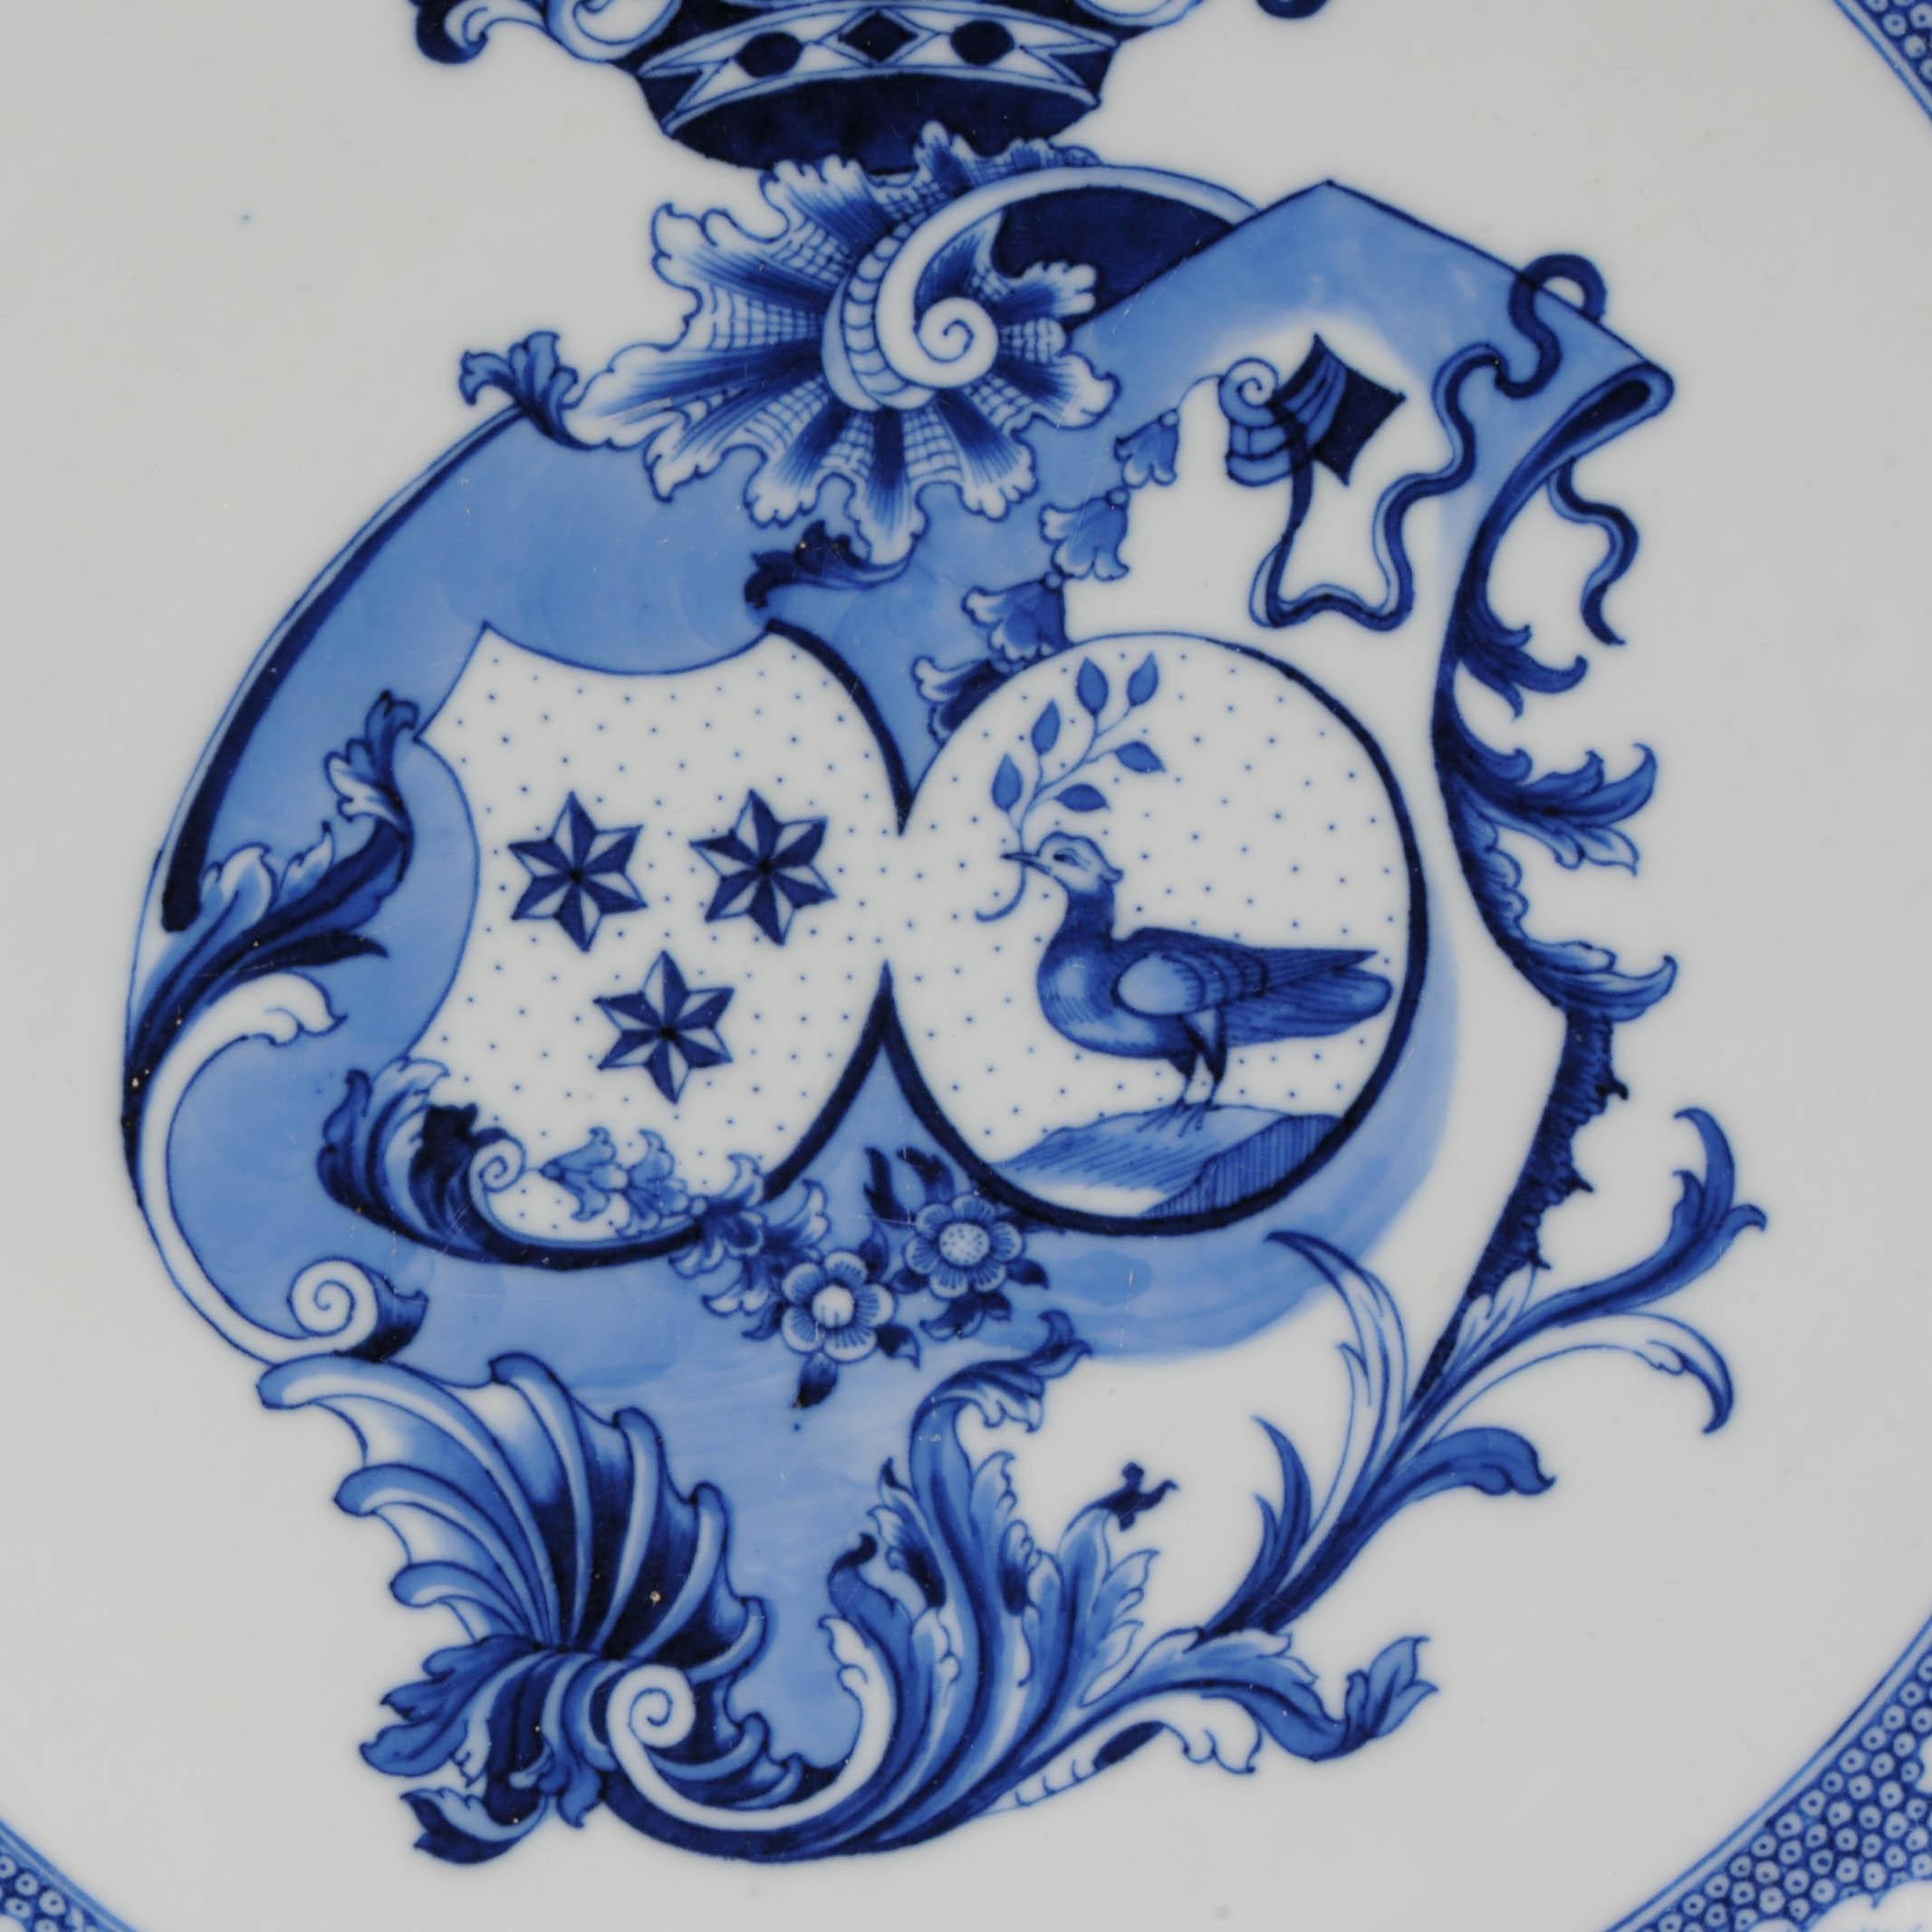 Chinois Rare assiette de présentation en porcelaine chinoise ancienne avec bras armoriés Gallart Marchant 